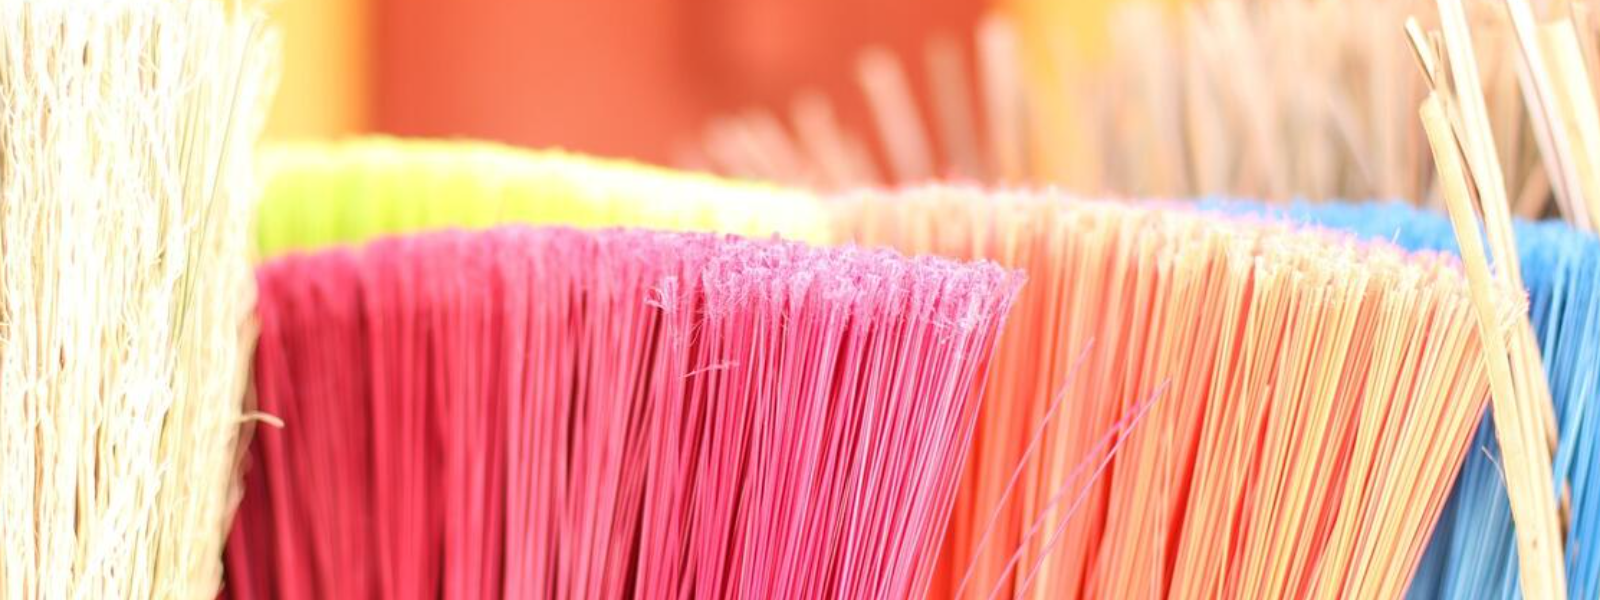 TIMERITA OÜ - Pakume professionaalseid koristus- ja puhastusteenuseid nii kodudele kui ka äripindadele, et tagada puhtad...